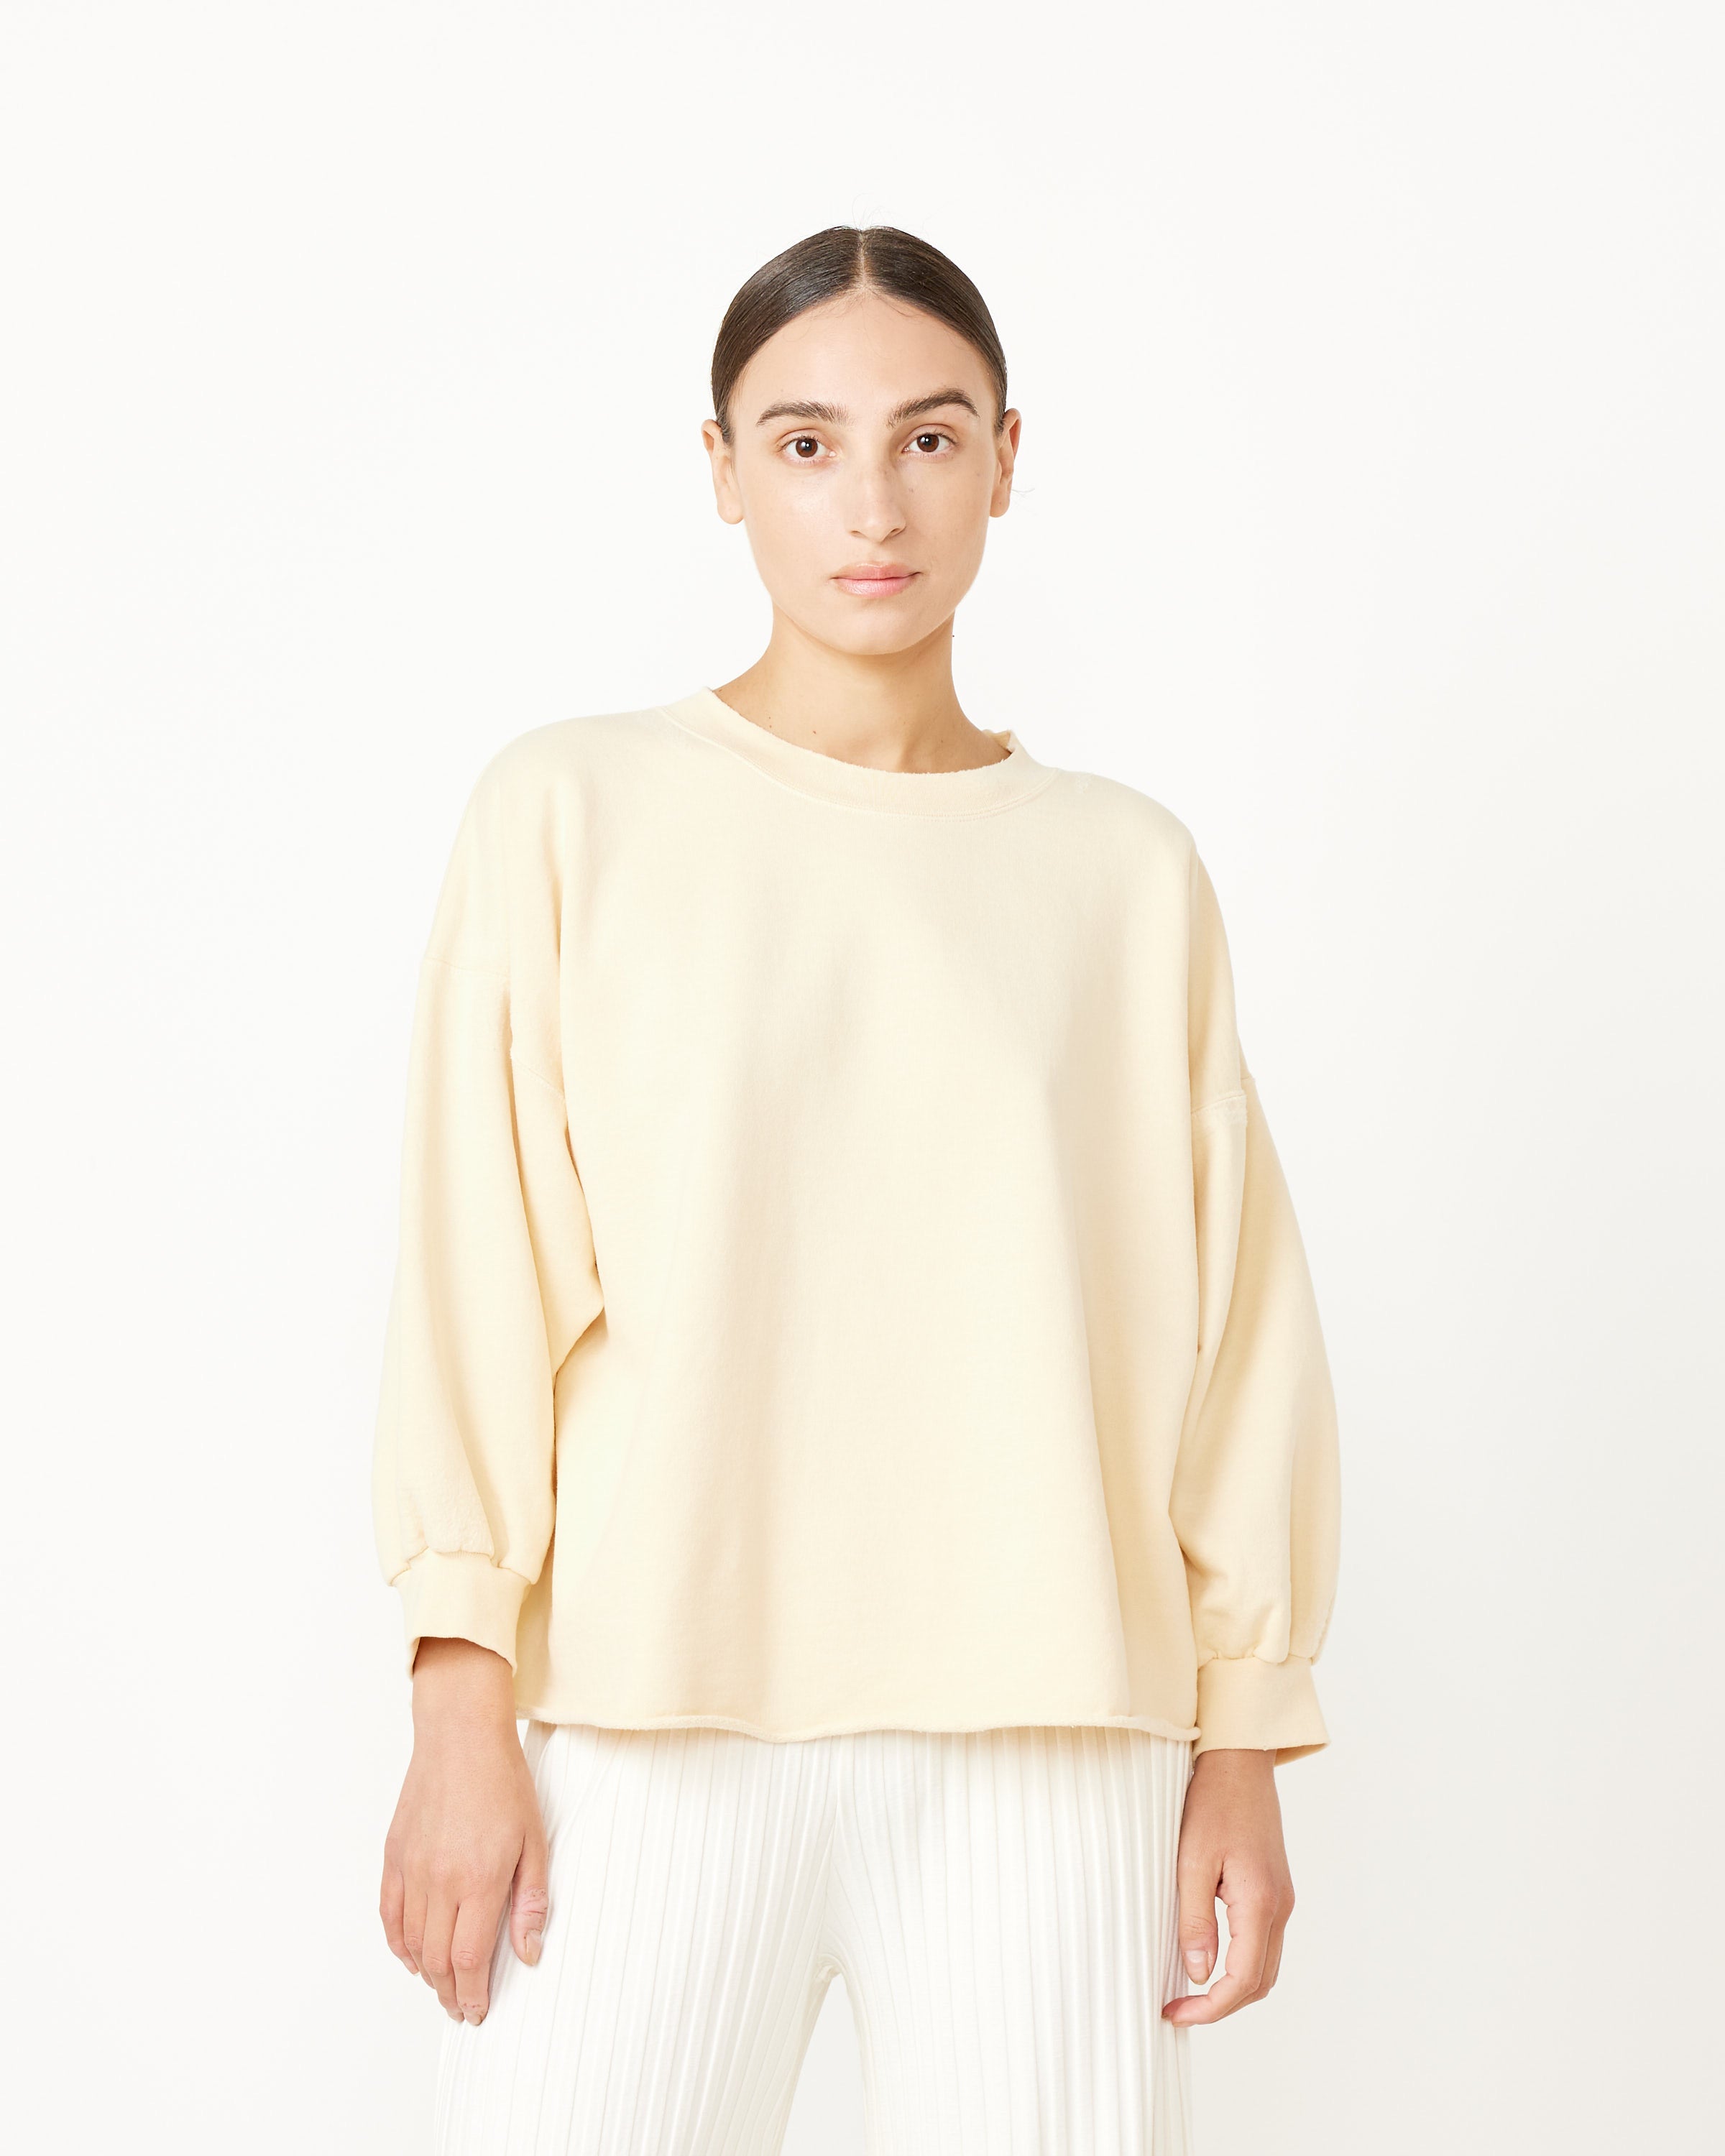 Fond Sweatshirt in Butter – Mohawk General Store